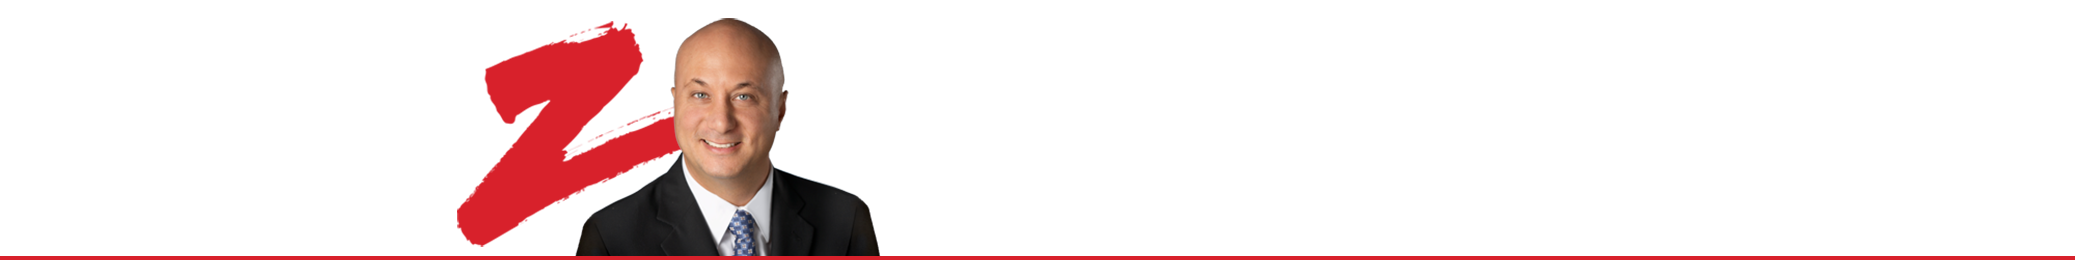 PAUL ZAMMIT REAL ESTATE LTD.